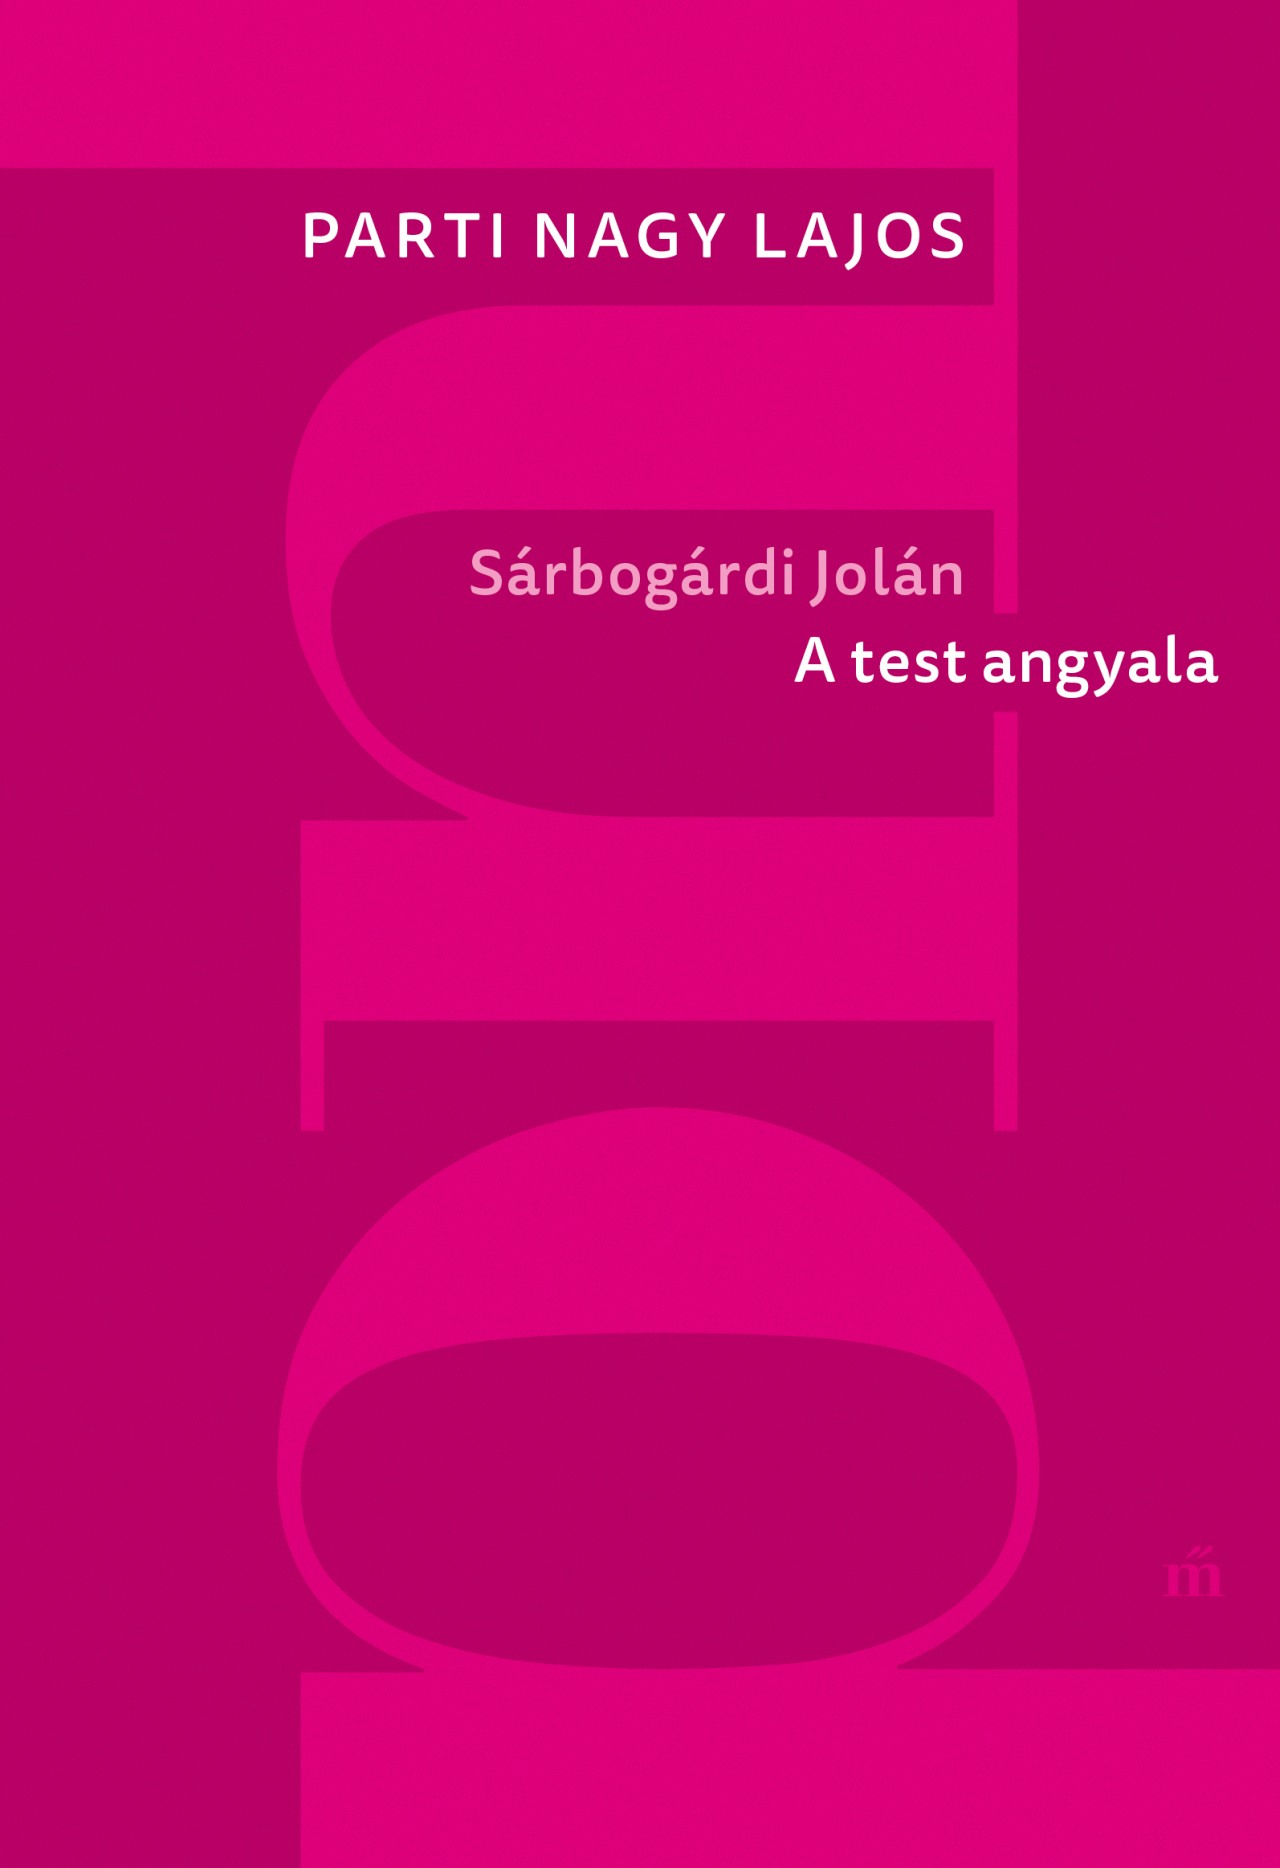 Sárbogárdi Jolán - A test angyala (új kiadás) Parti Nagy Lajos